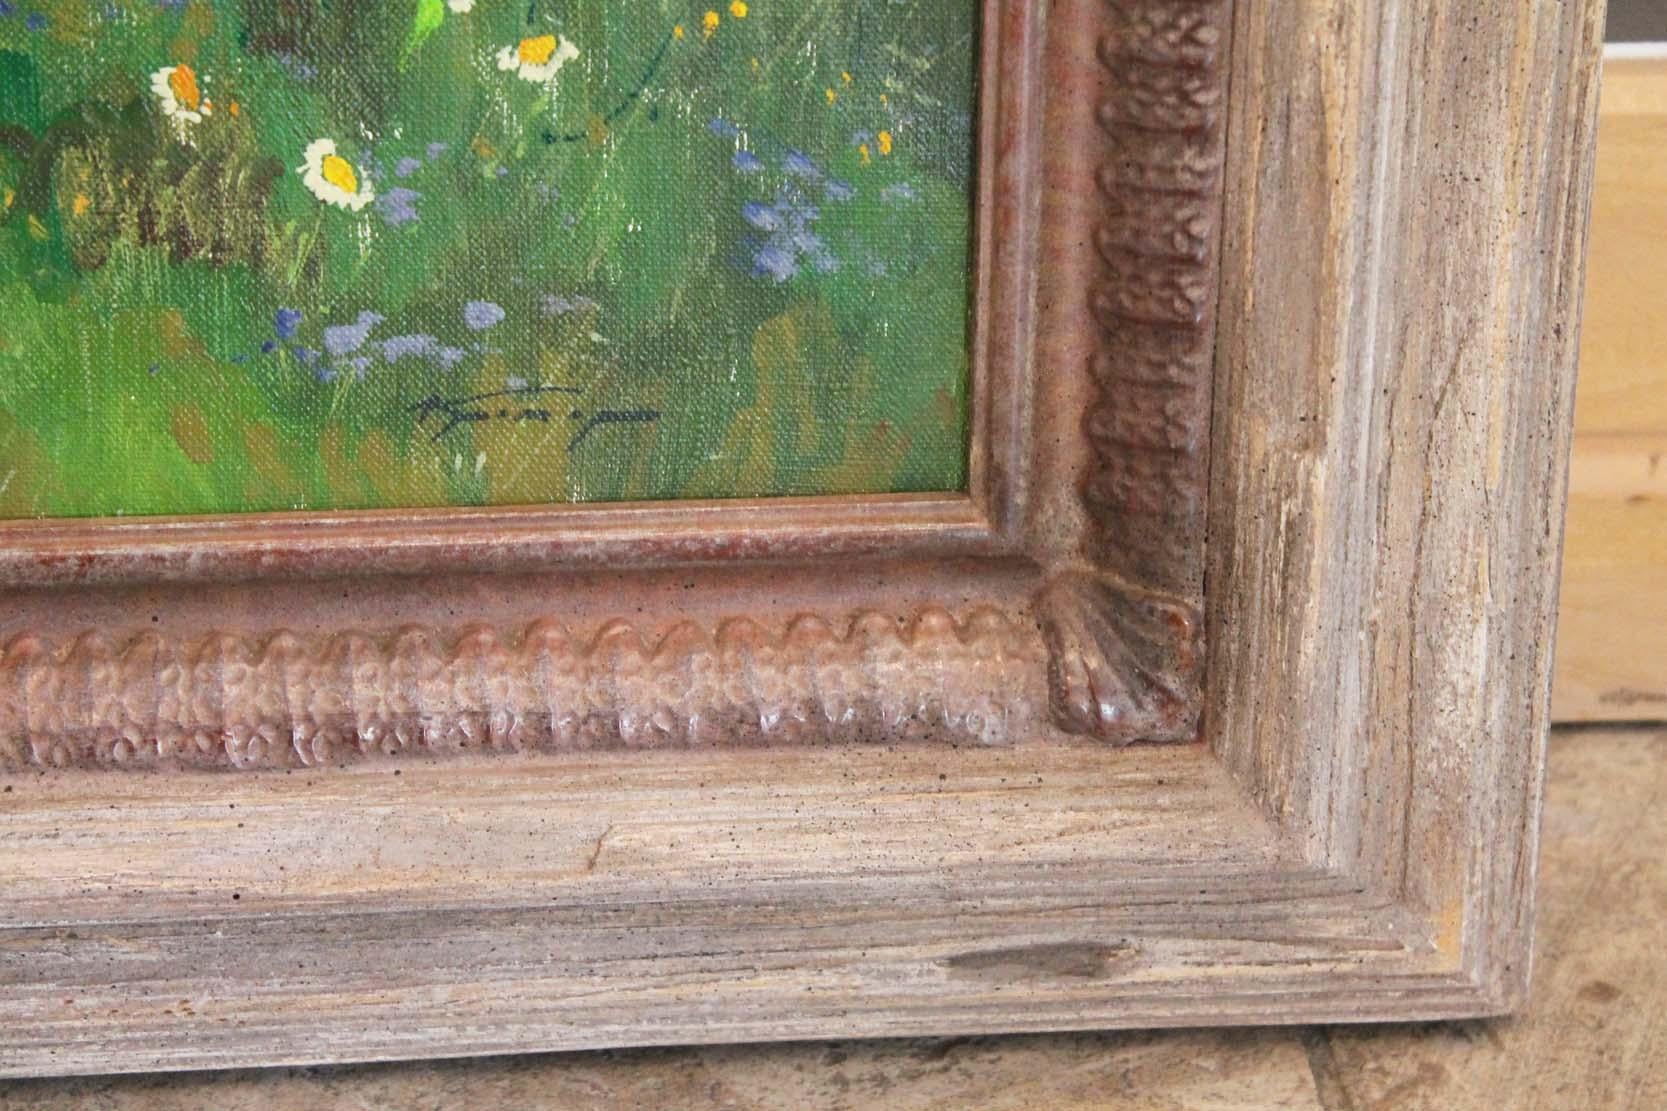 Wunderschöne pastorale Landschaft des bekannten St. Petersburger Malers Alexander Kremer aus der dritten Generation.  Kremers Gemälde sind eine Mischung aus Realismus und Impressionismus in der besten Tradition der russischen Malerei. Seine Werke